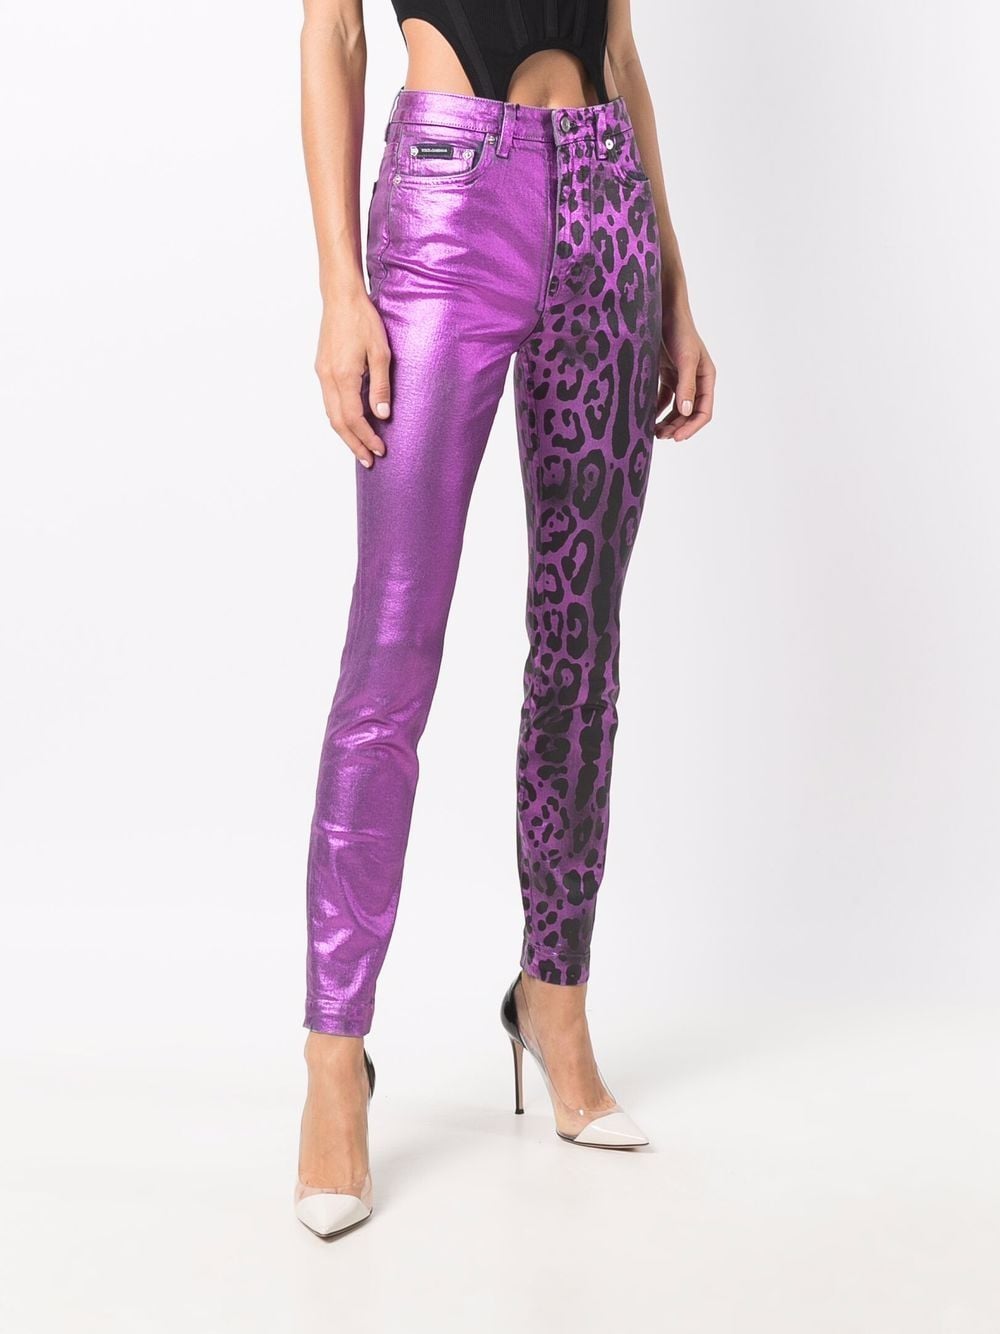 фото Dolce & gabbana кожаные брюки с леопардовым принтом